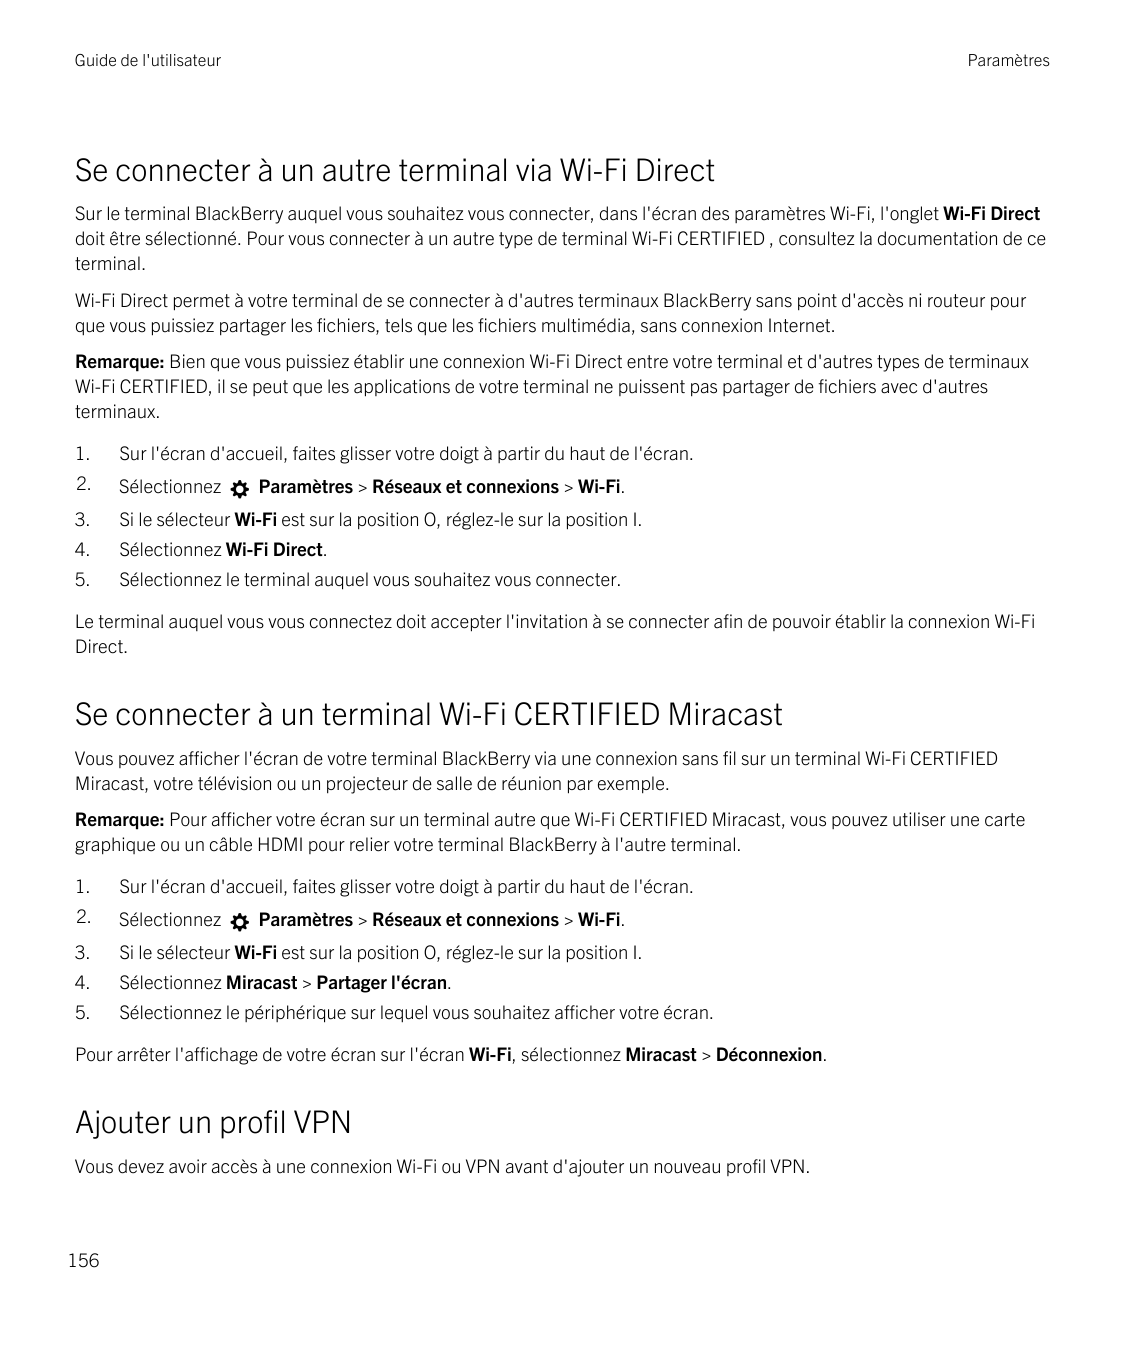 Guide de l'utilisateurParamètresSe connecter à un autre terminal via Wi-Fi DirectSur le terminal BlackBerry auquel vous souhaite